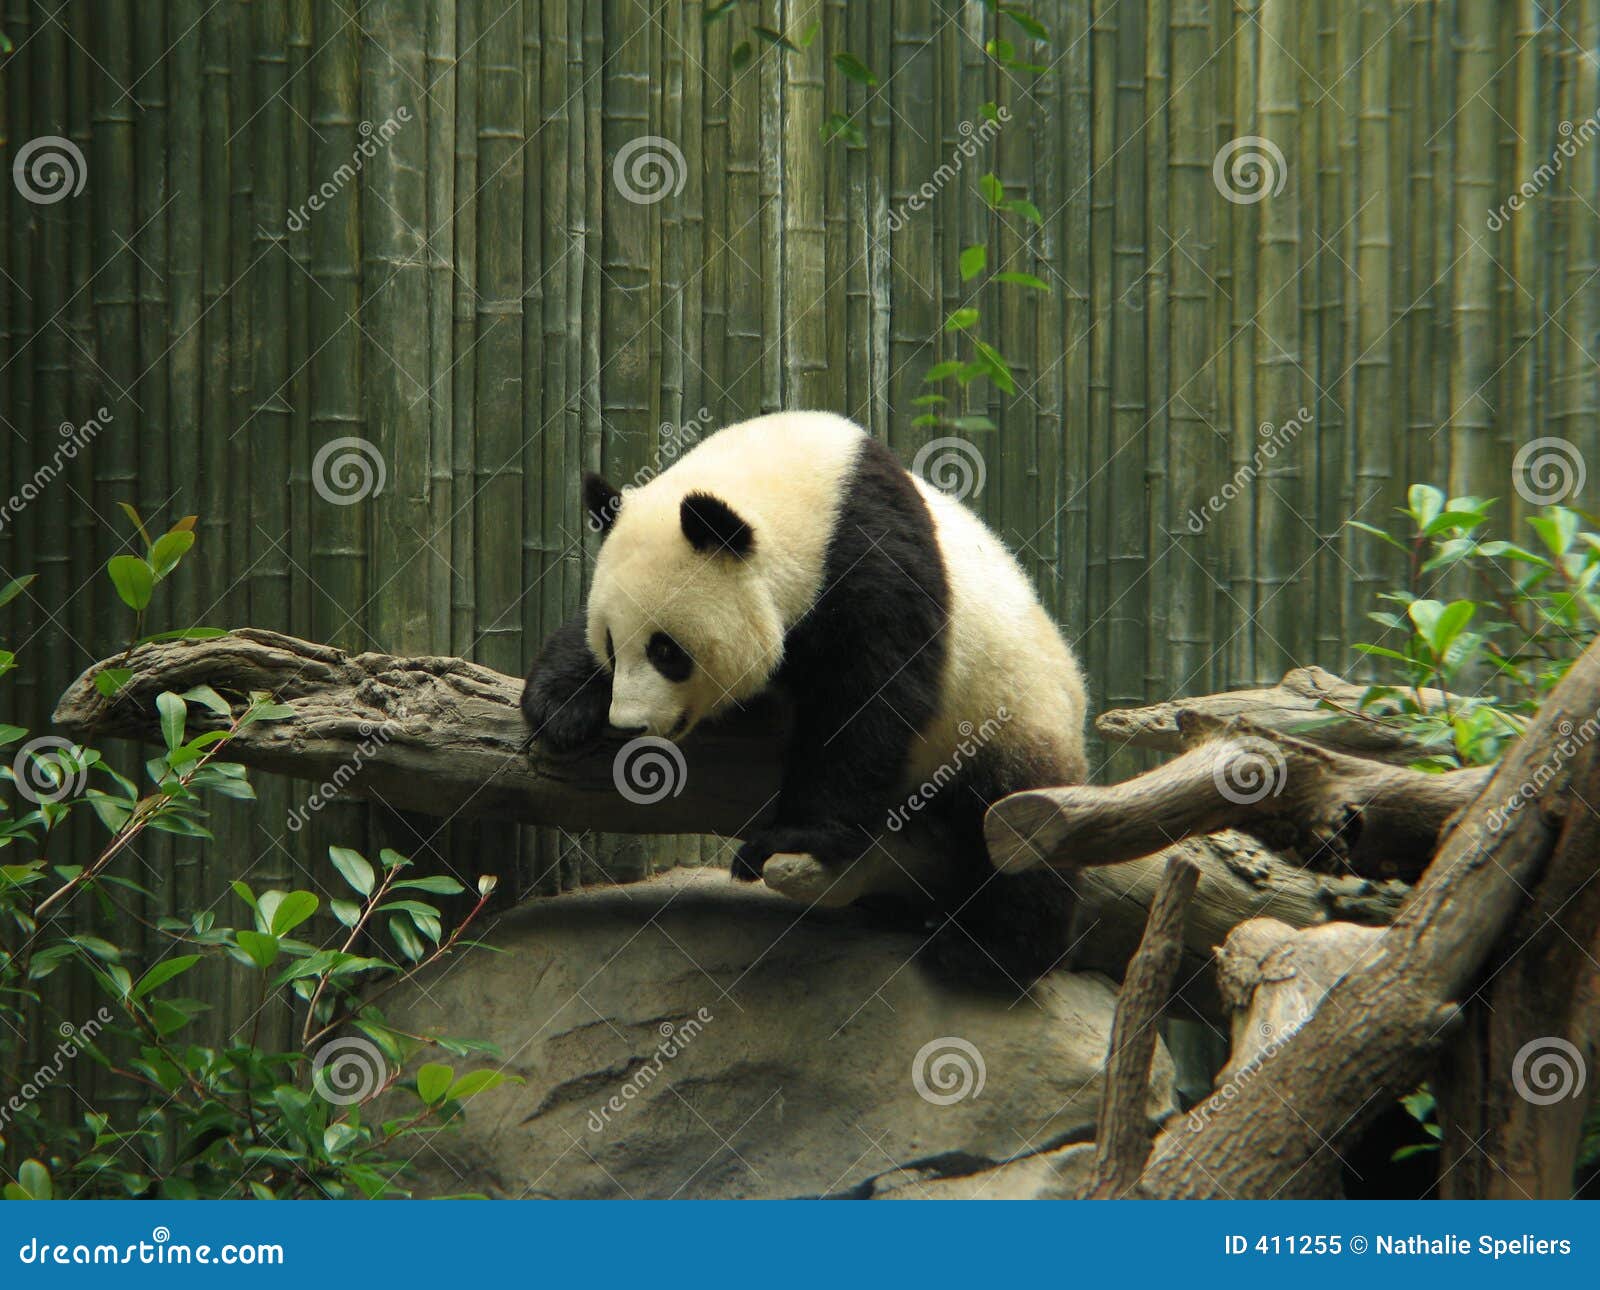 熊熊猫 库存图片. 图片 包括有 动物学, 可爱, 爱拥抱, 种类, 聚会所, 哺乳动物, 动物园, 危及 - 2394853